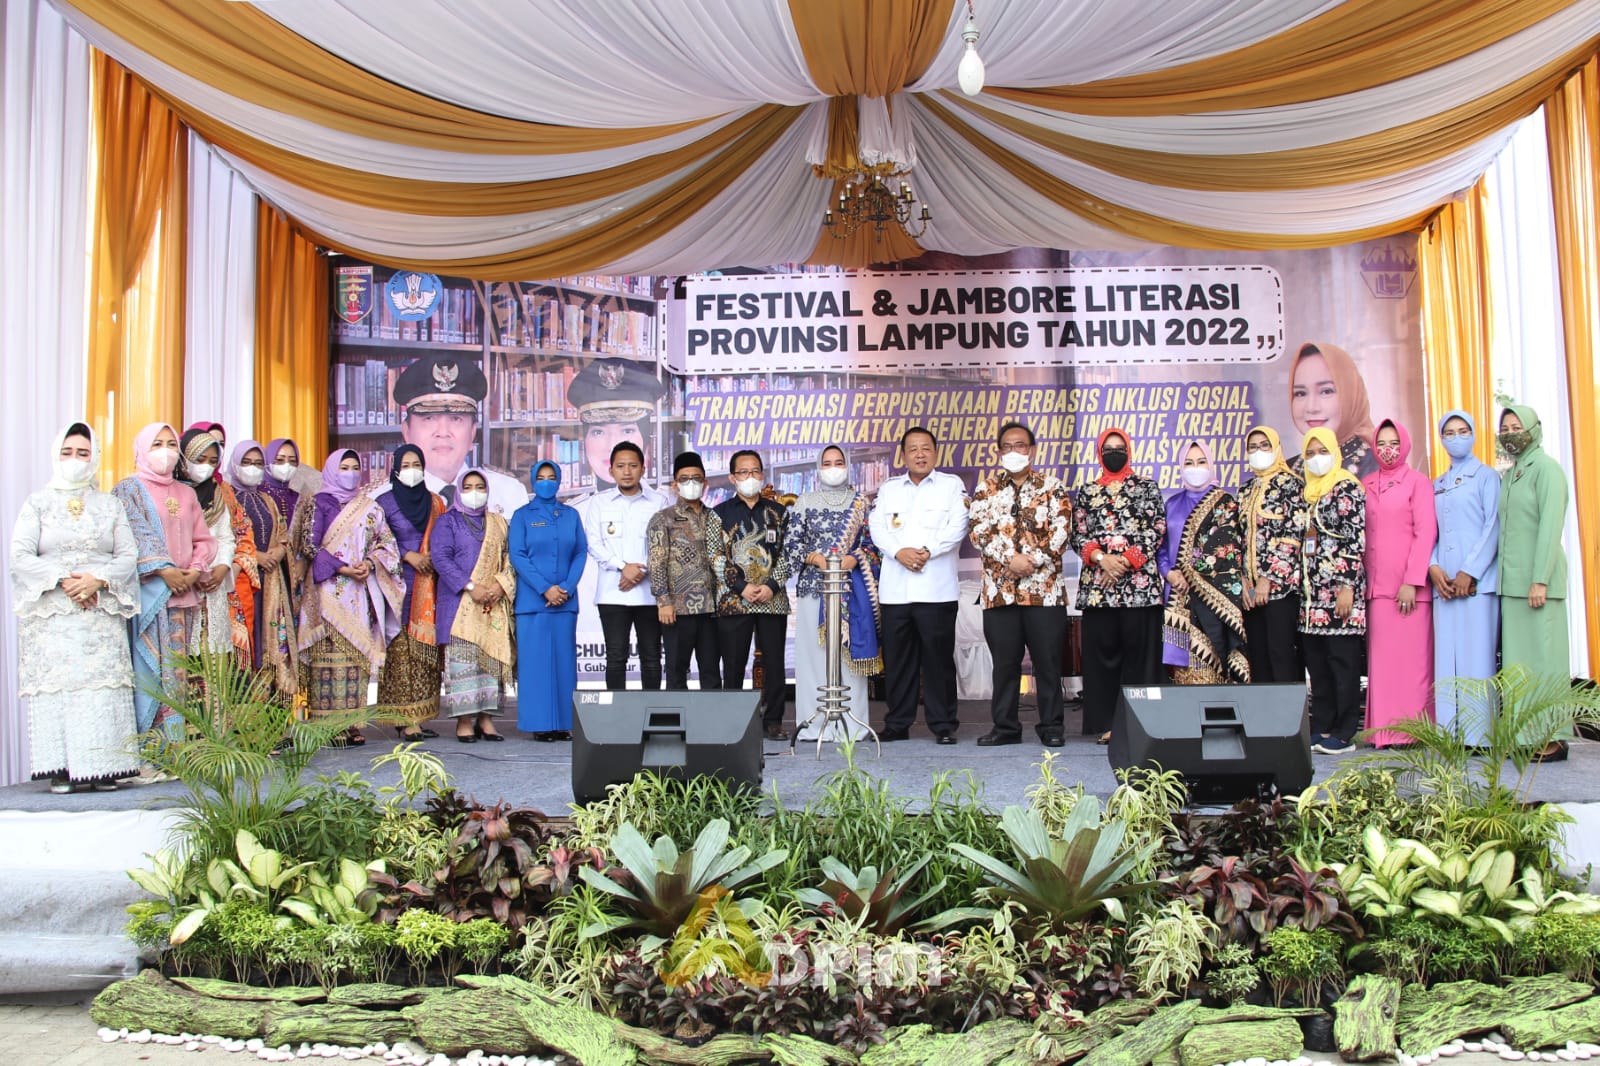 IPLM Lampung Sebesar 11,98 Persen, Ini Kata Bunda Literasi